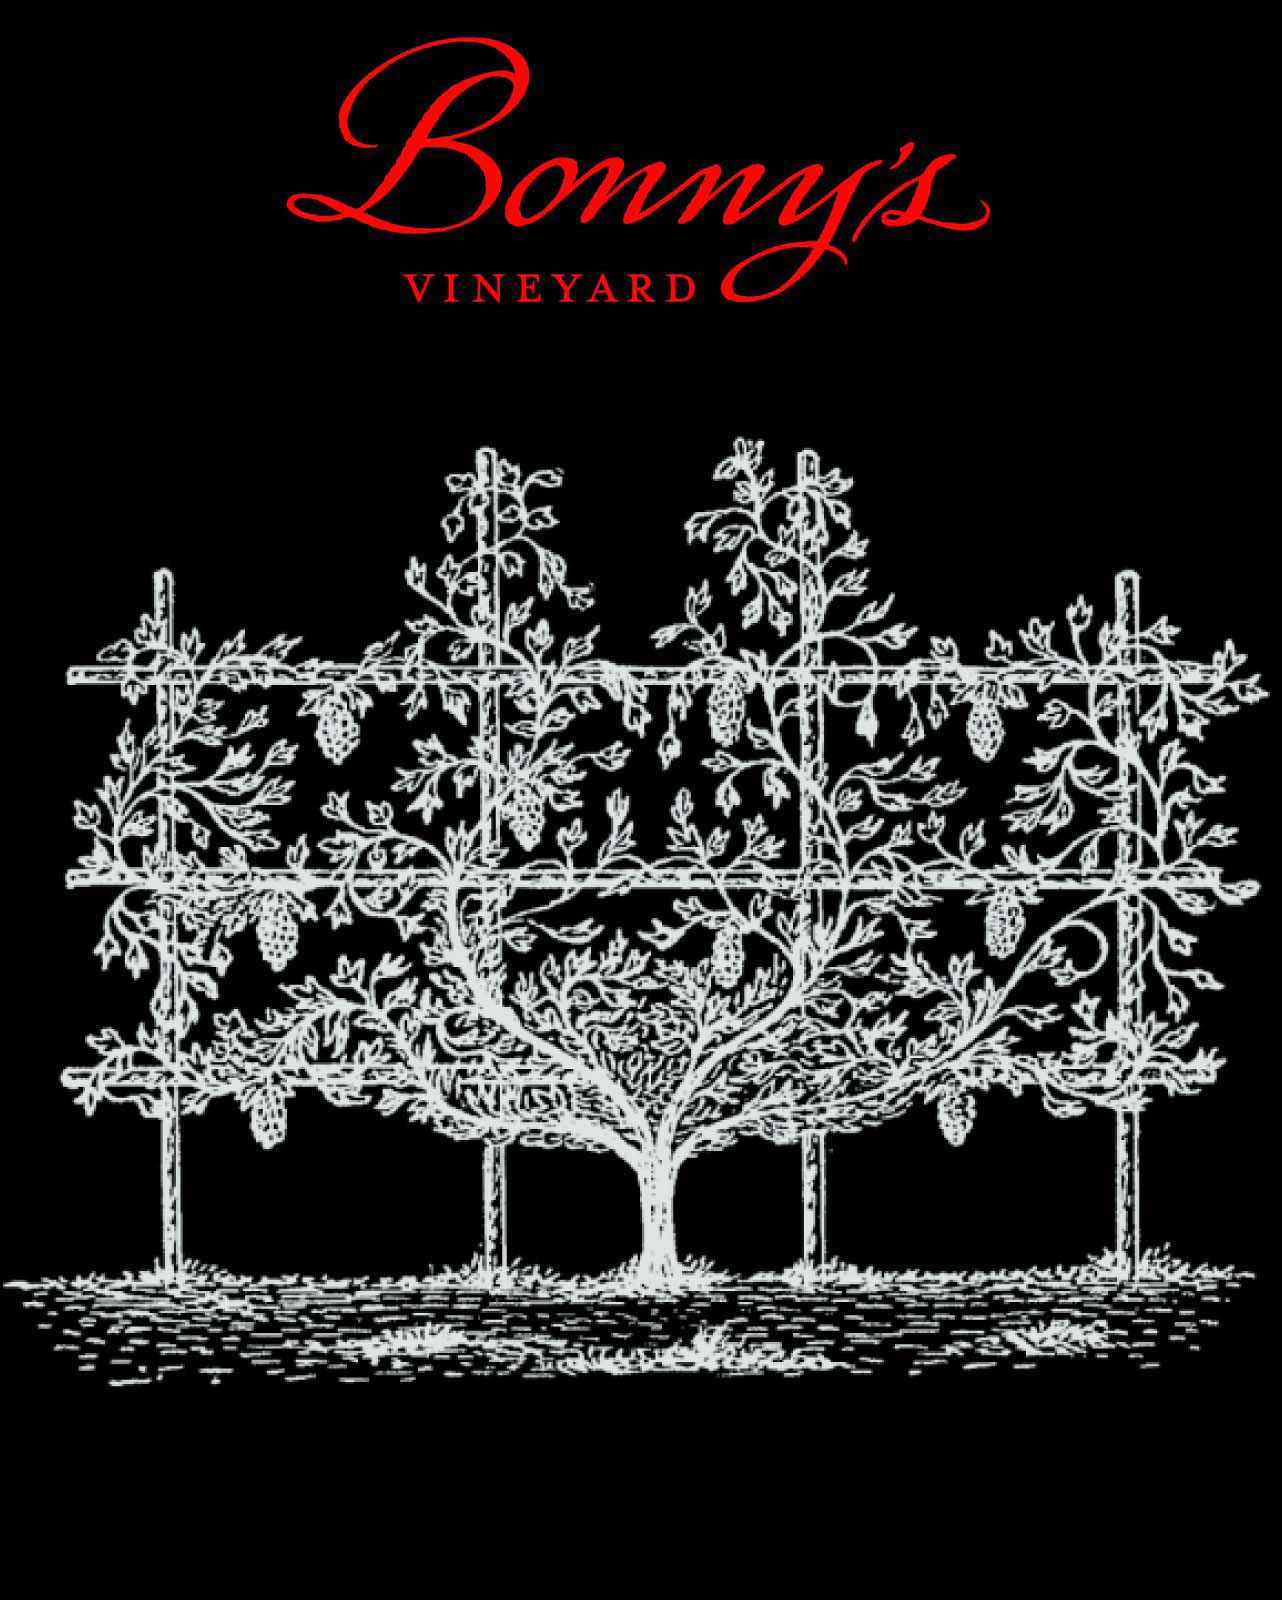 Product Image for 2016 Bonny's Vineyard Cabernet